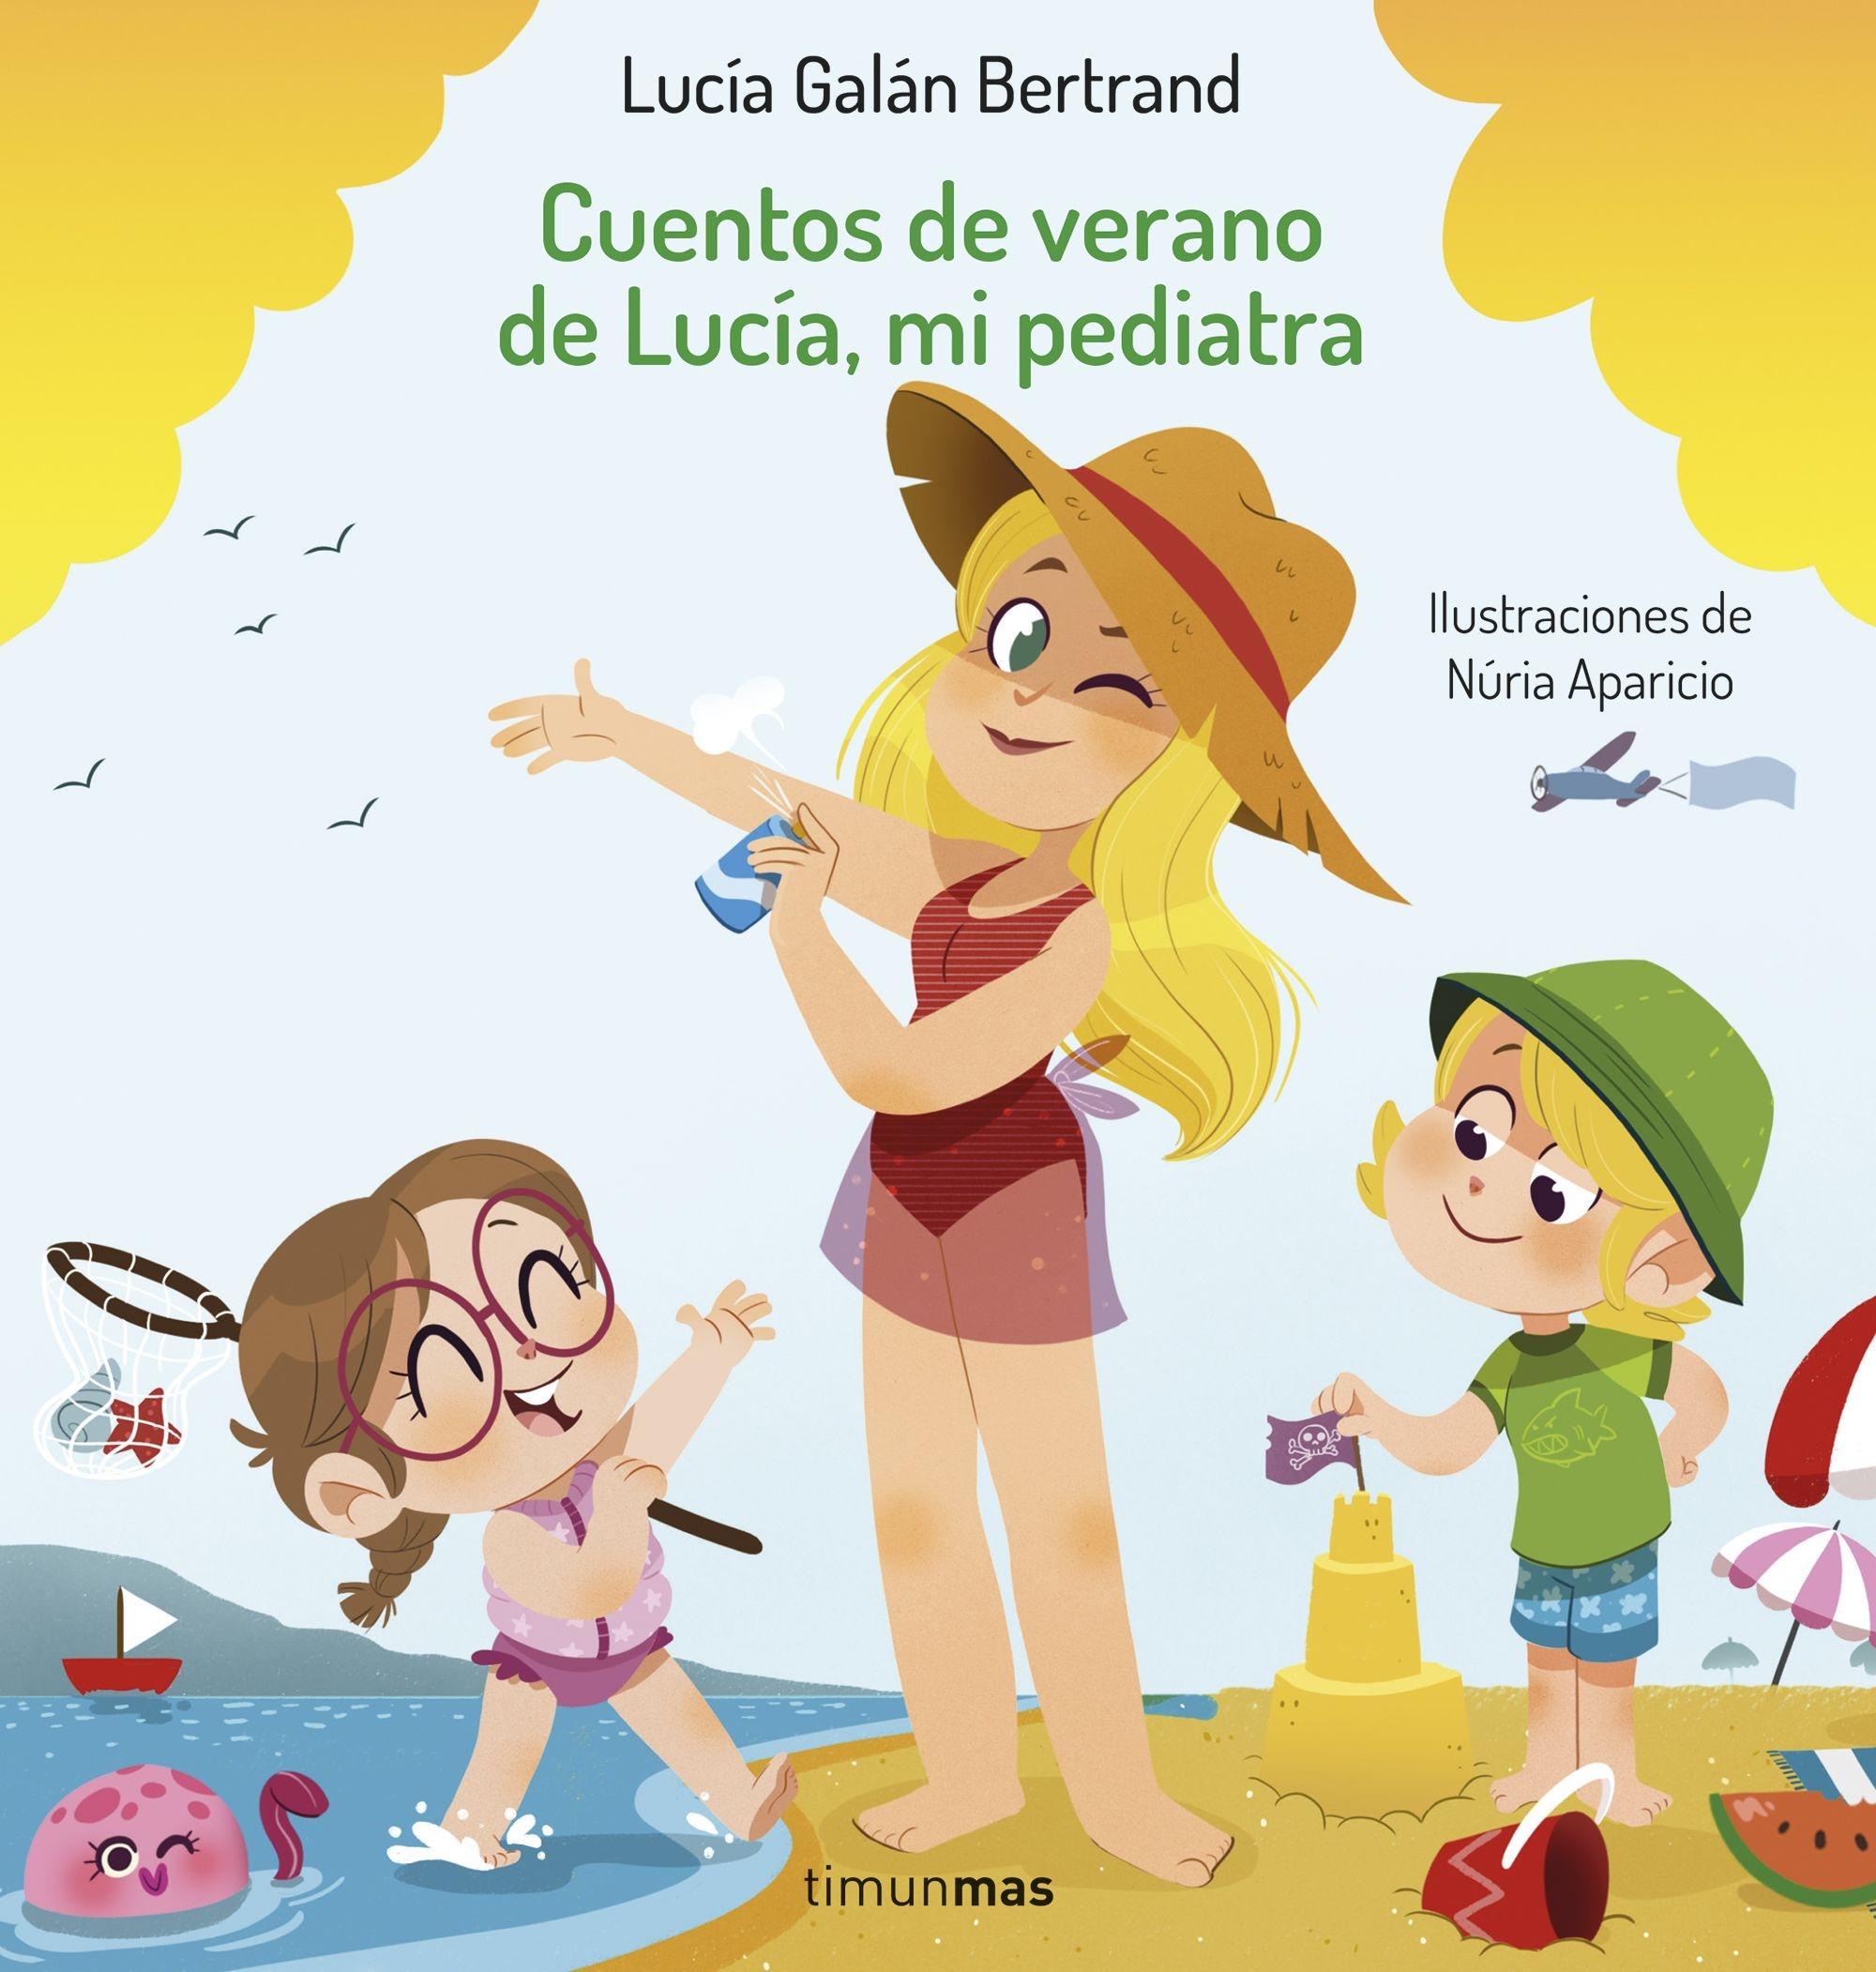 Cuentos de verano de Lucía, mi pediatra "Ilustraciones de Núria Aparicio"